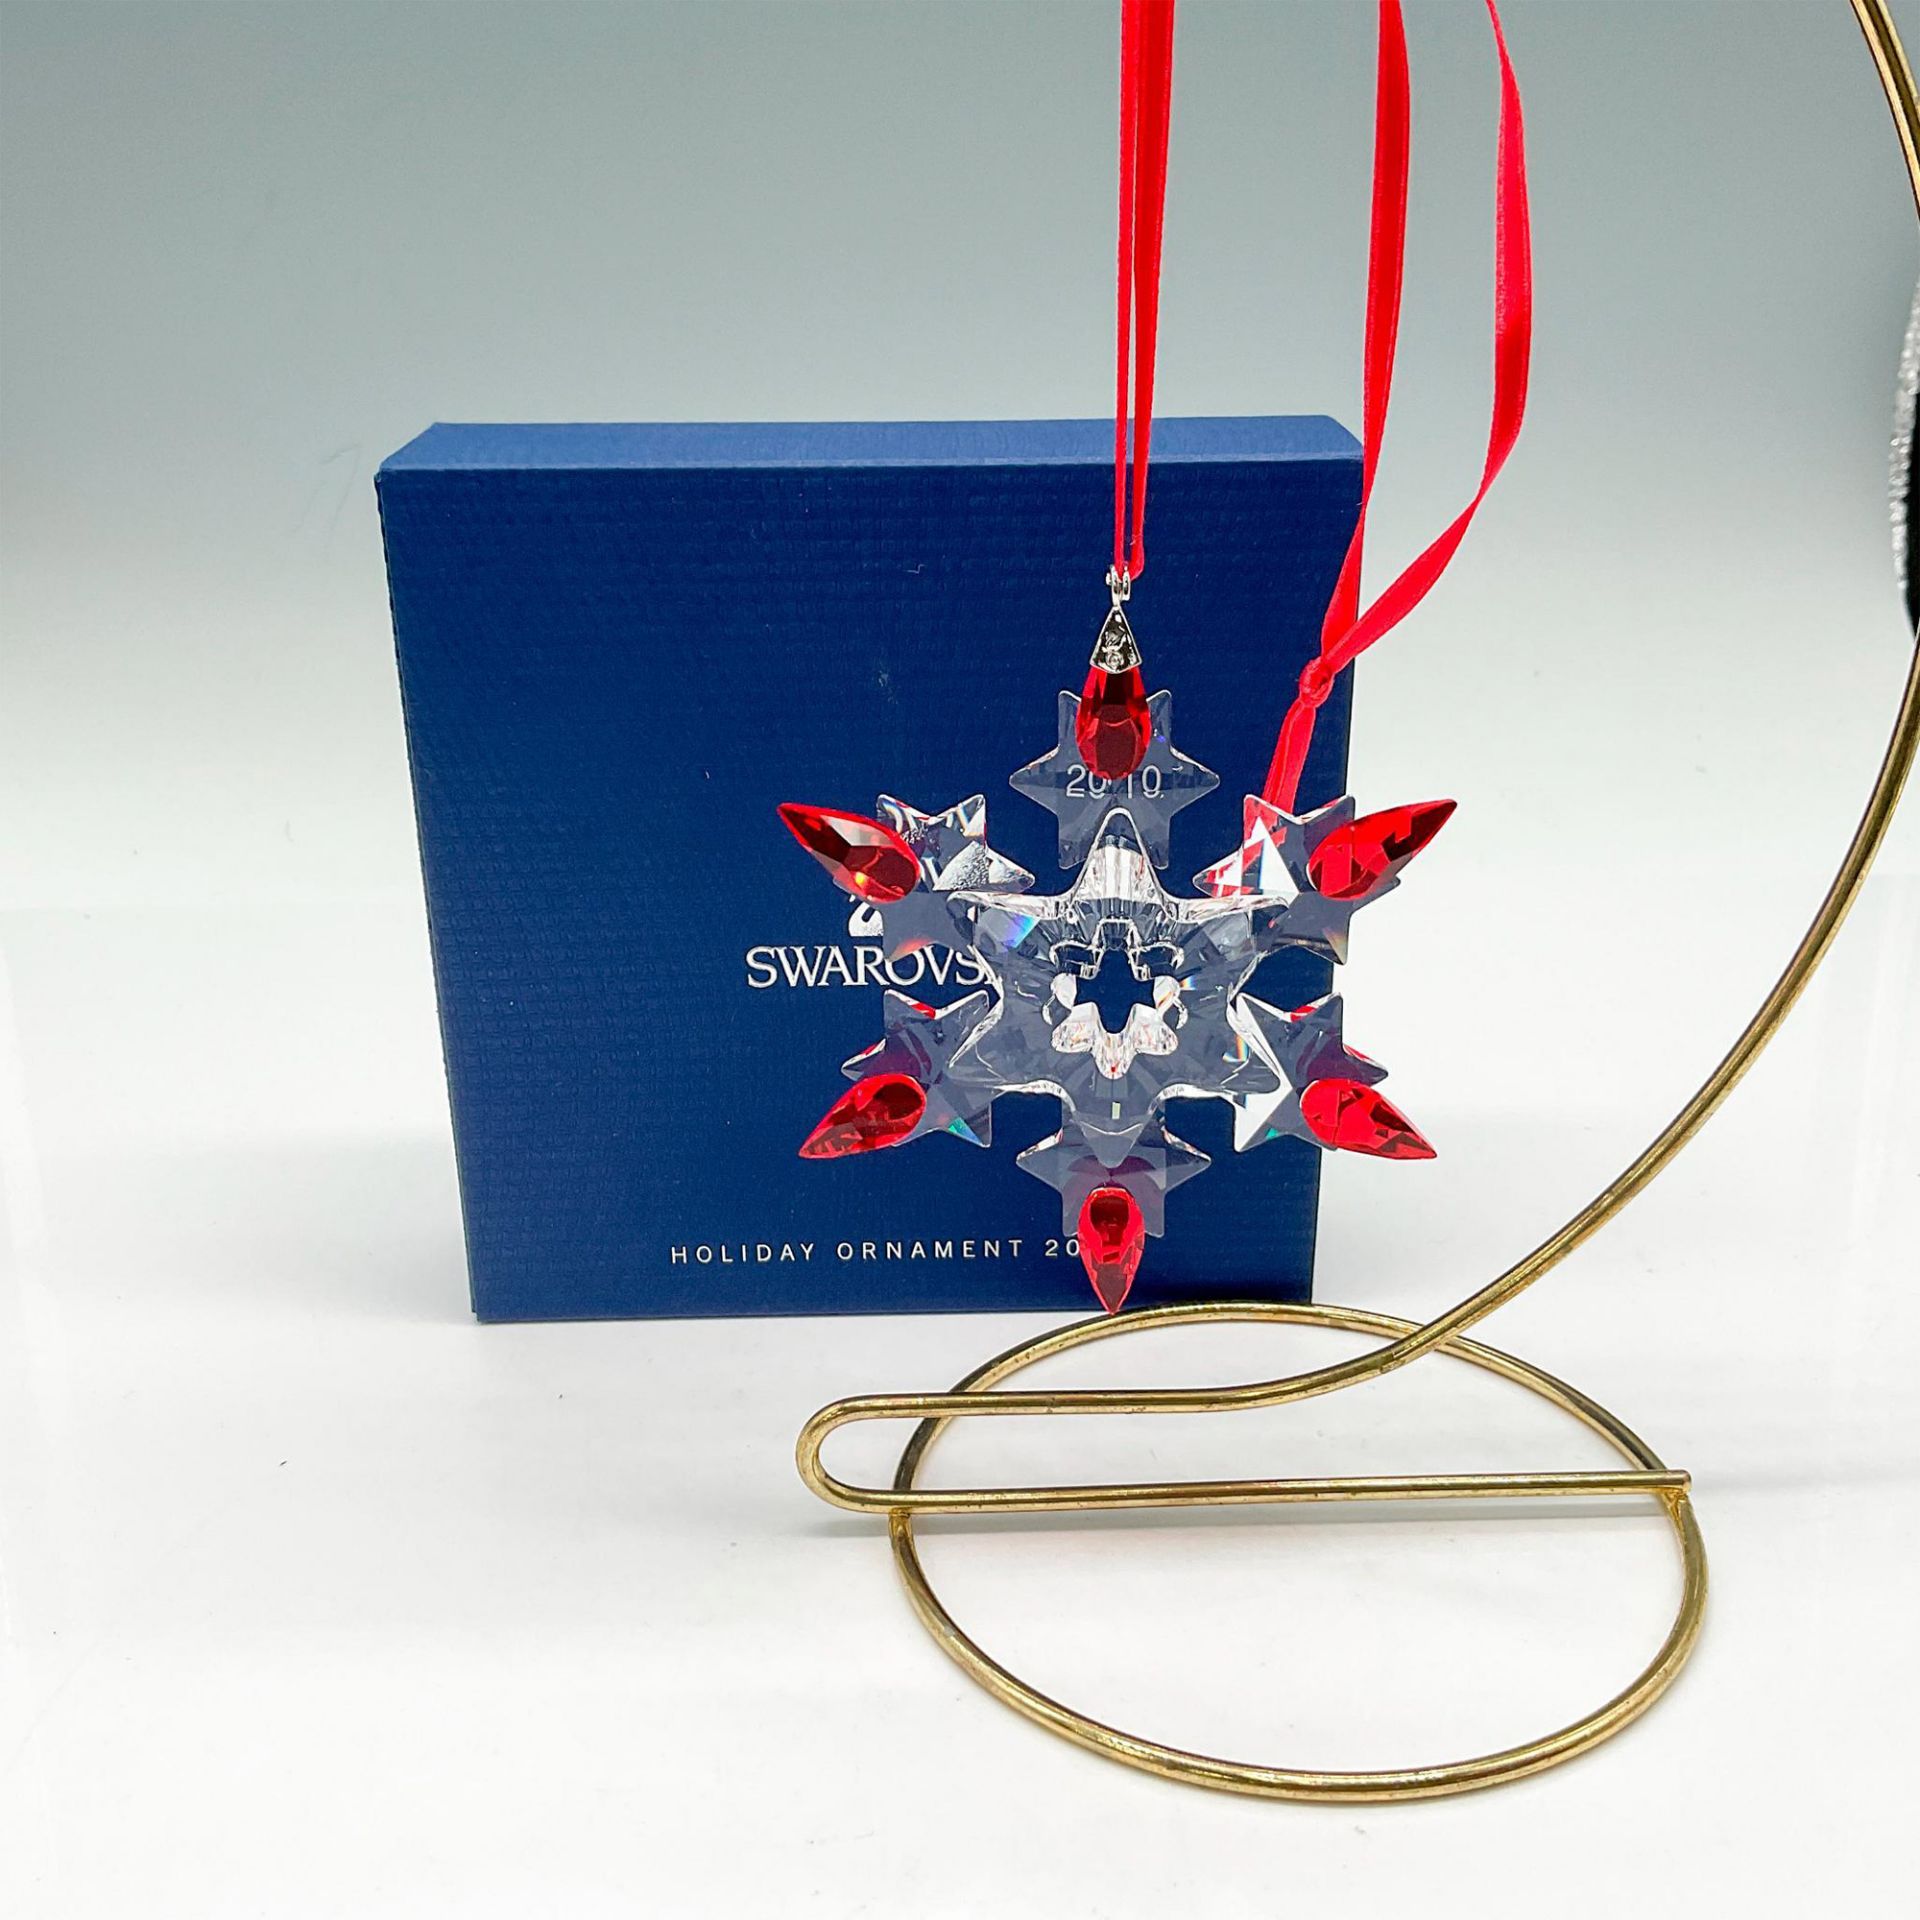 Swarovski Crystal Christmas Ornament 2010 - Image 3 of 3